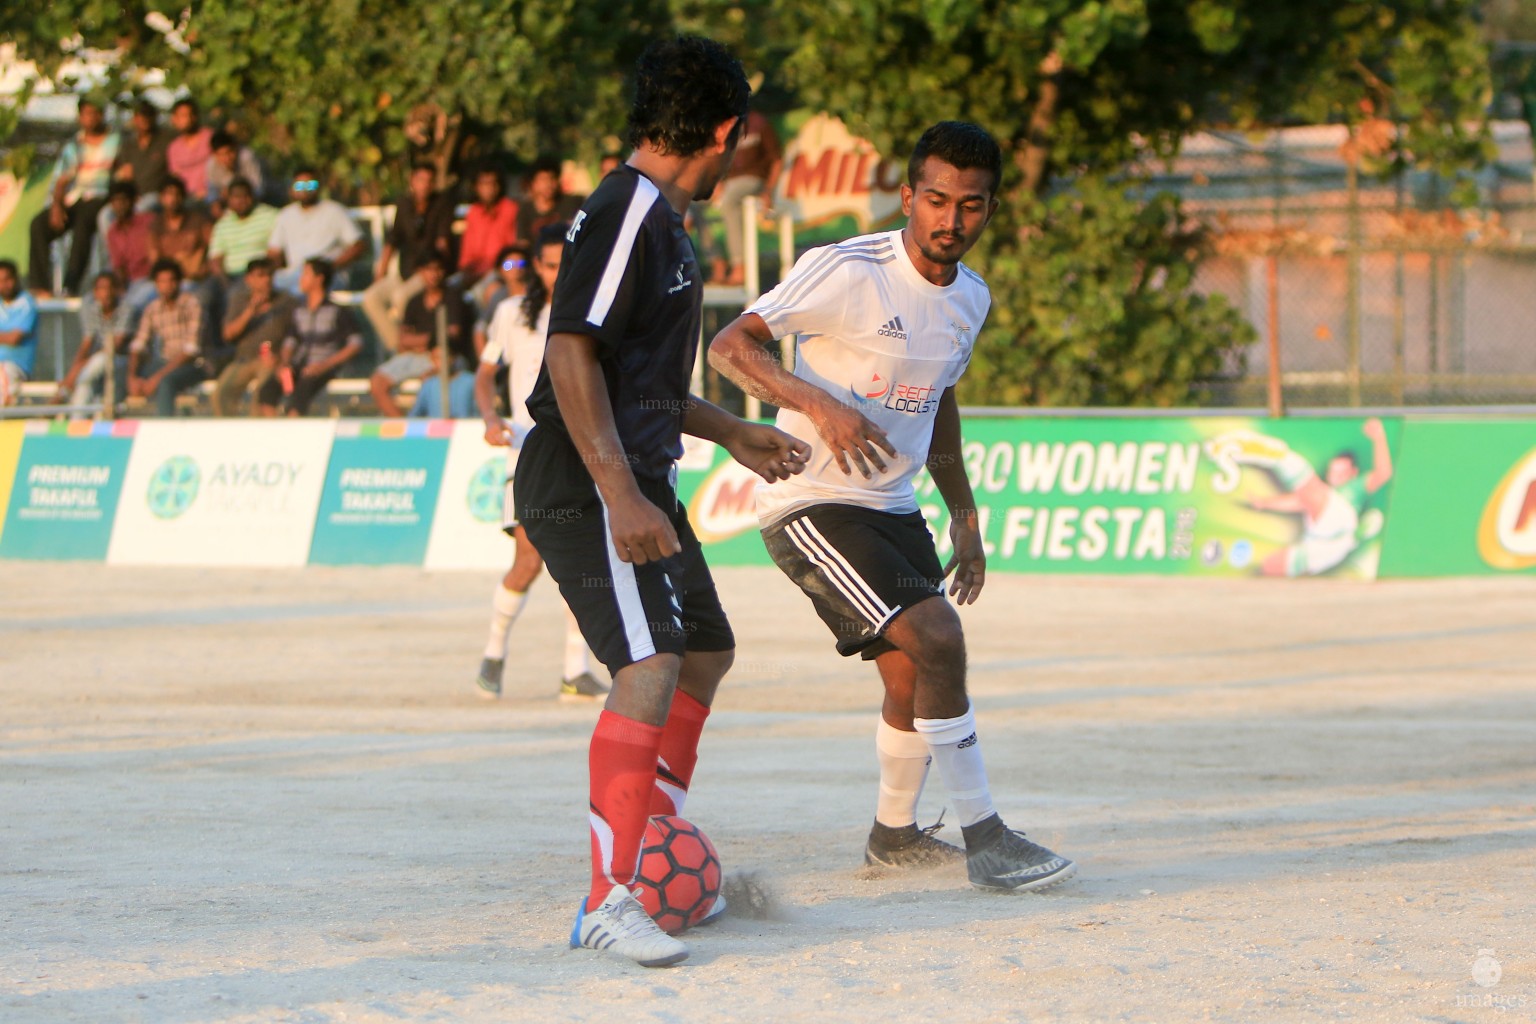 2nd Day of Milo Club Maldives Cup futsal tournament in Male', Maldives, Saturday, March. 26, 2016. (Images.mv Photo/Abdulla Abeedh).